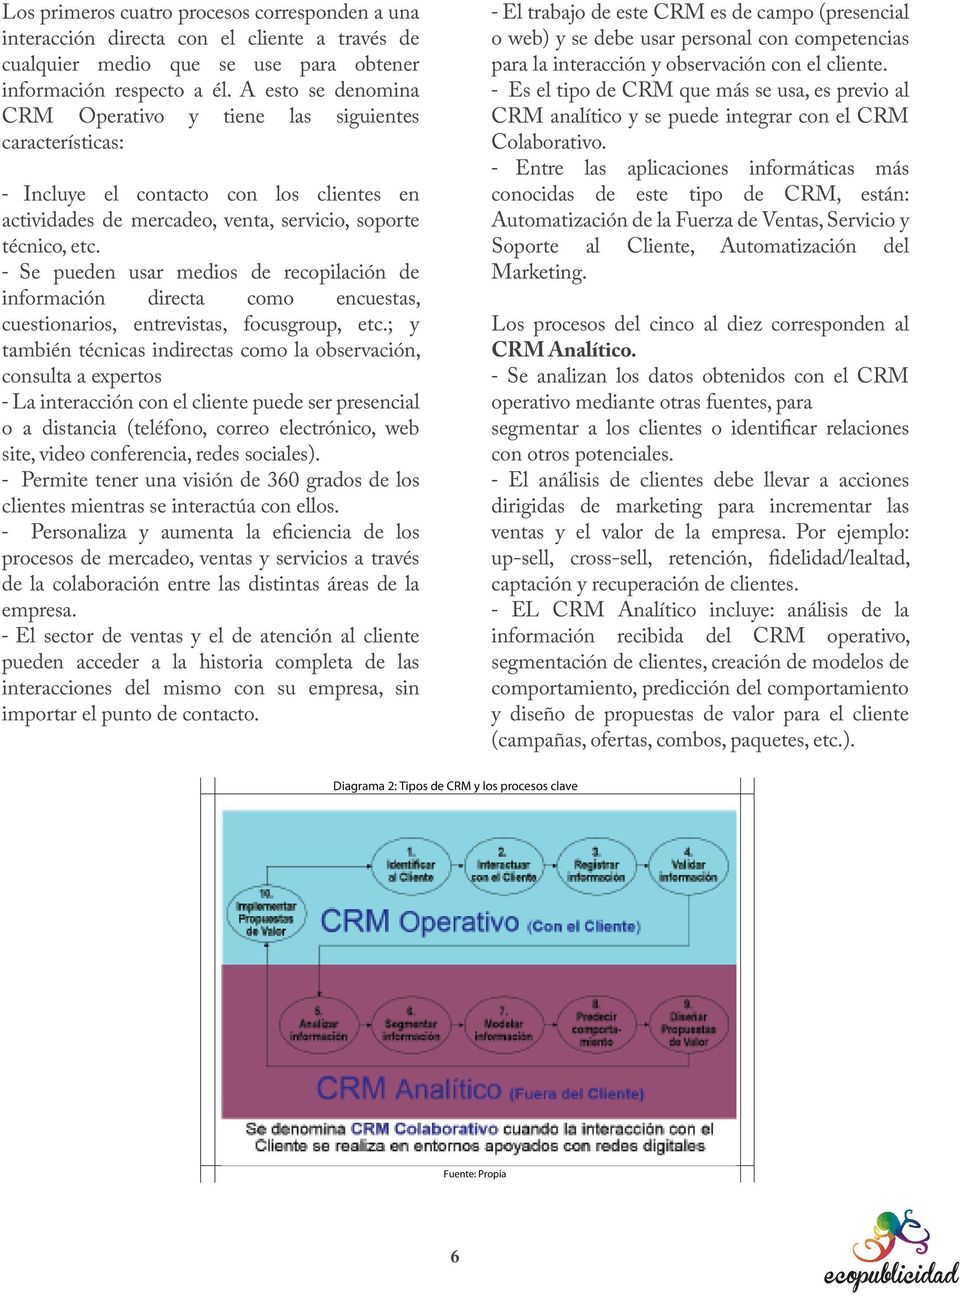 observación con el cliente. - Es el tipo de CRM que más se usa, es previo al CRM analítico y se puede integrar con el CRM Colaborativo.